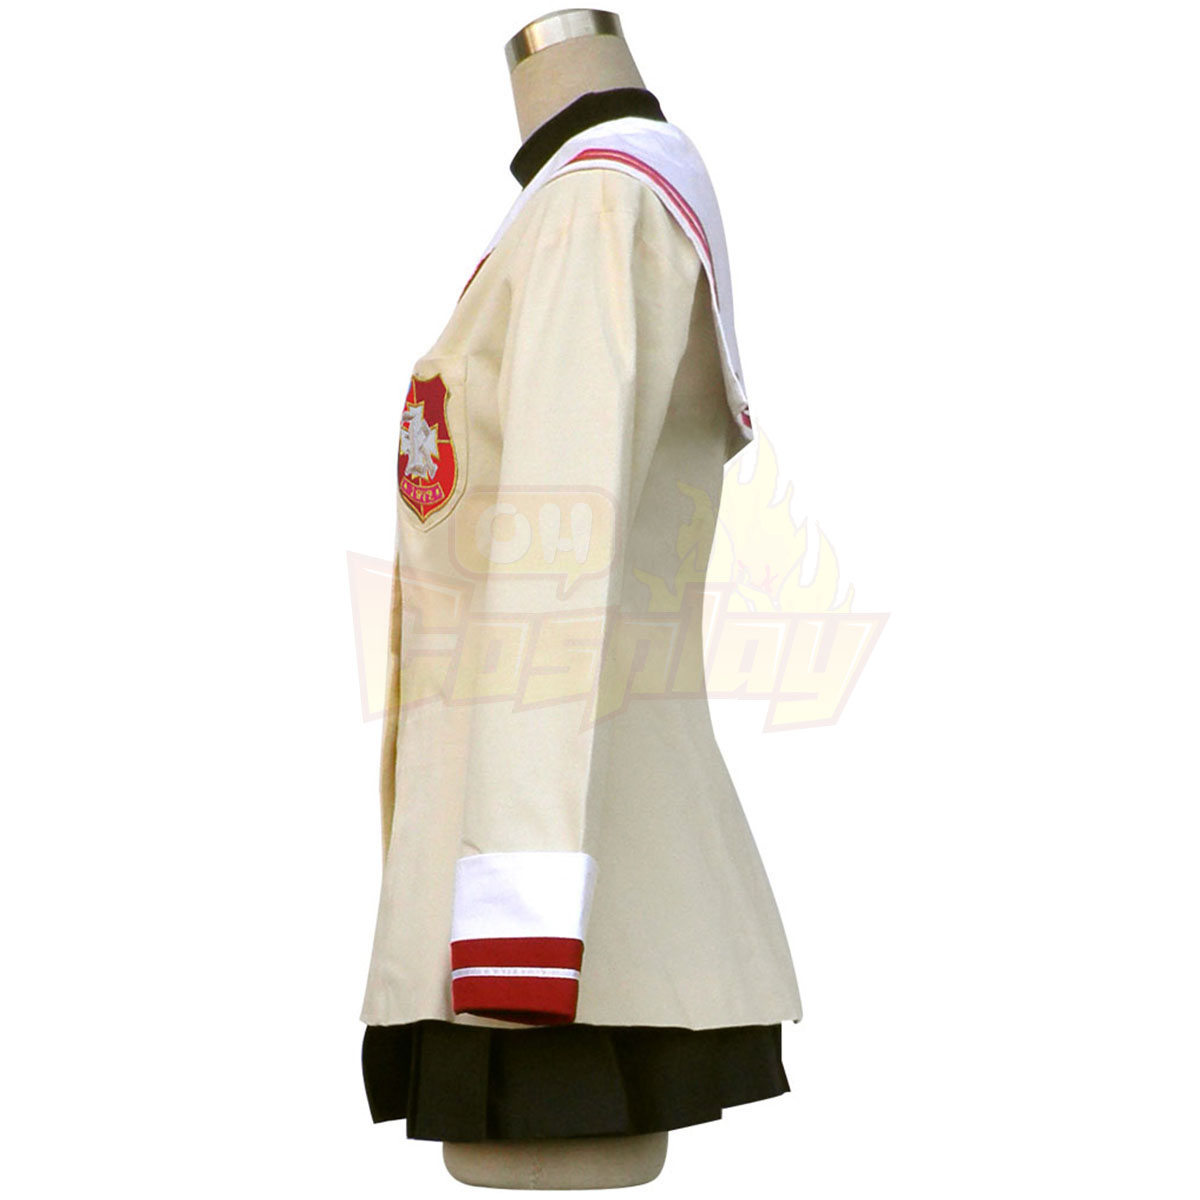 Luxusný Clannad Tomoyo Sakagami Stredná škola Samice Zimný Uniform Červená Badge Kostýmy